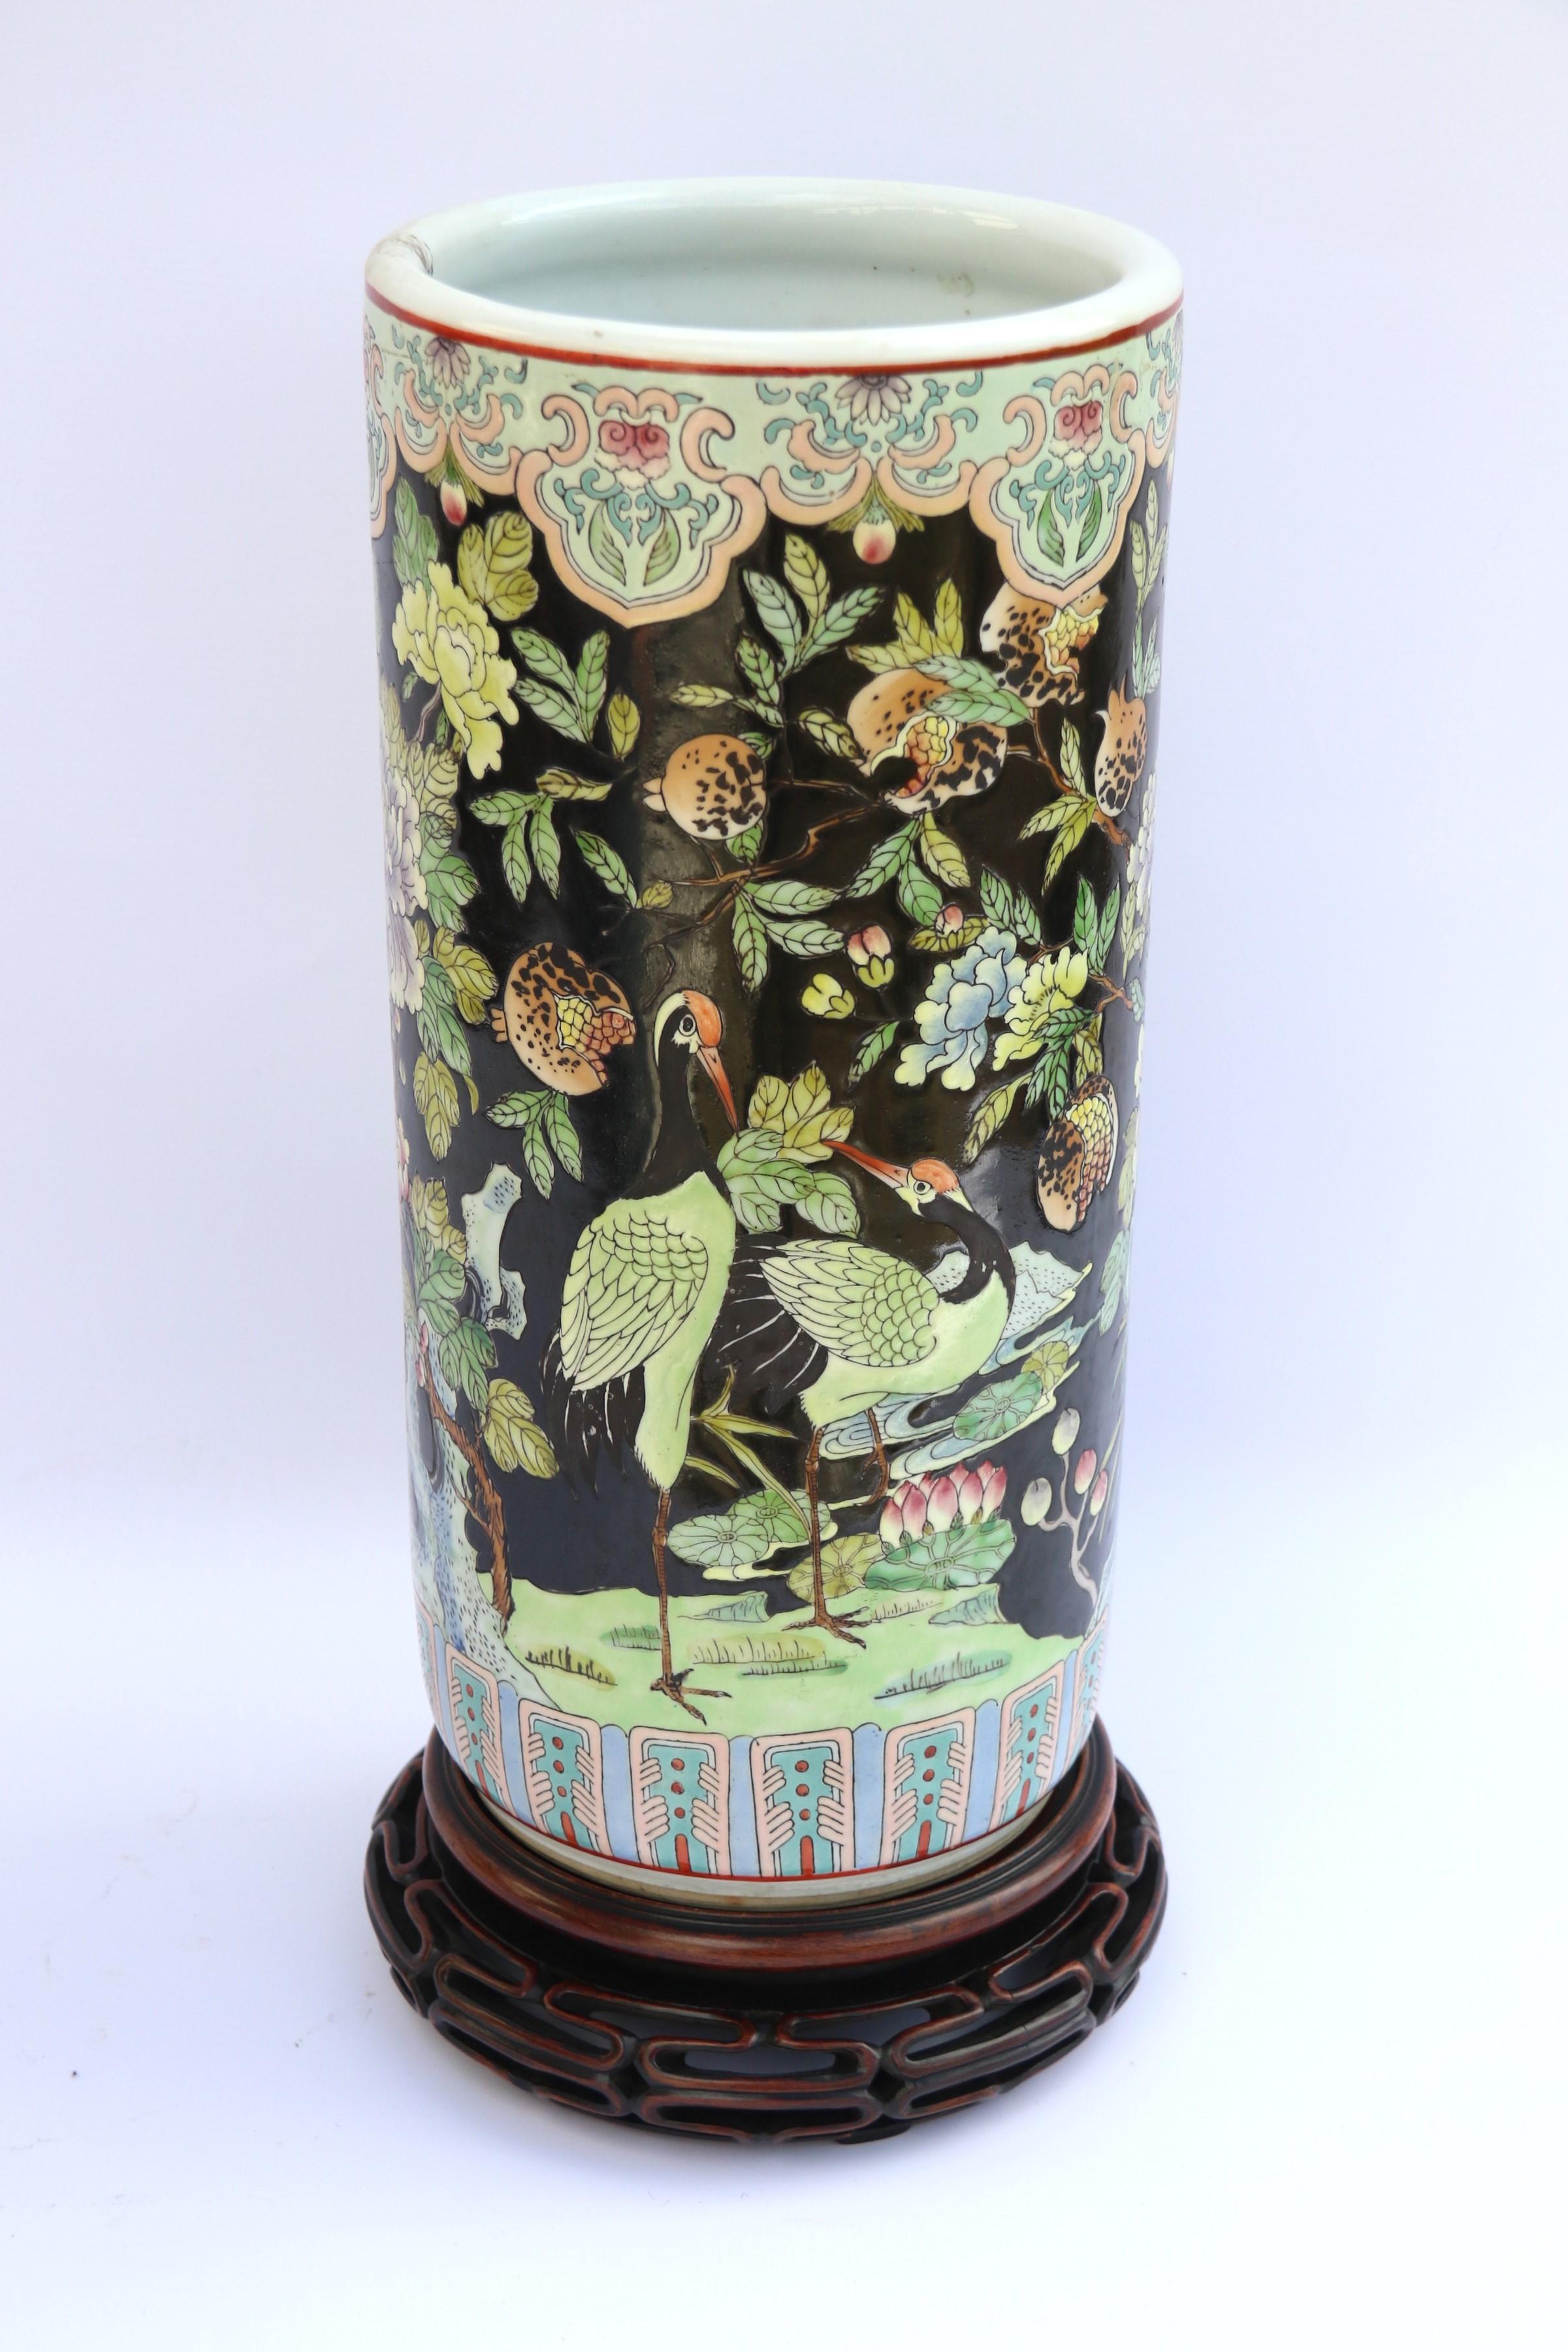 Ce grand vase très décoratif de la famille noire chinoise, ou peut-être un support de canne, date d'environ 1930. Il est richement décoré sur un fond d'émail noir d'épais émaux peints à la main de couleurs vives avec des oiseaux exotiques, des